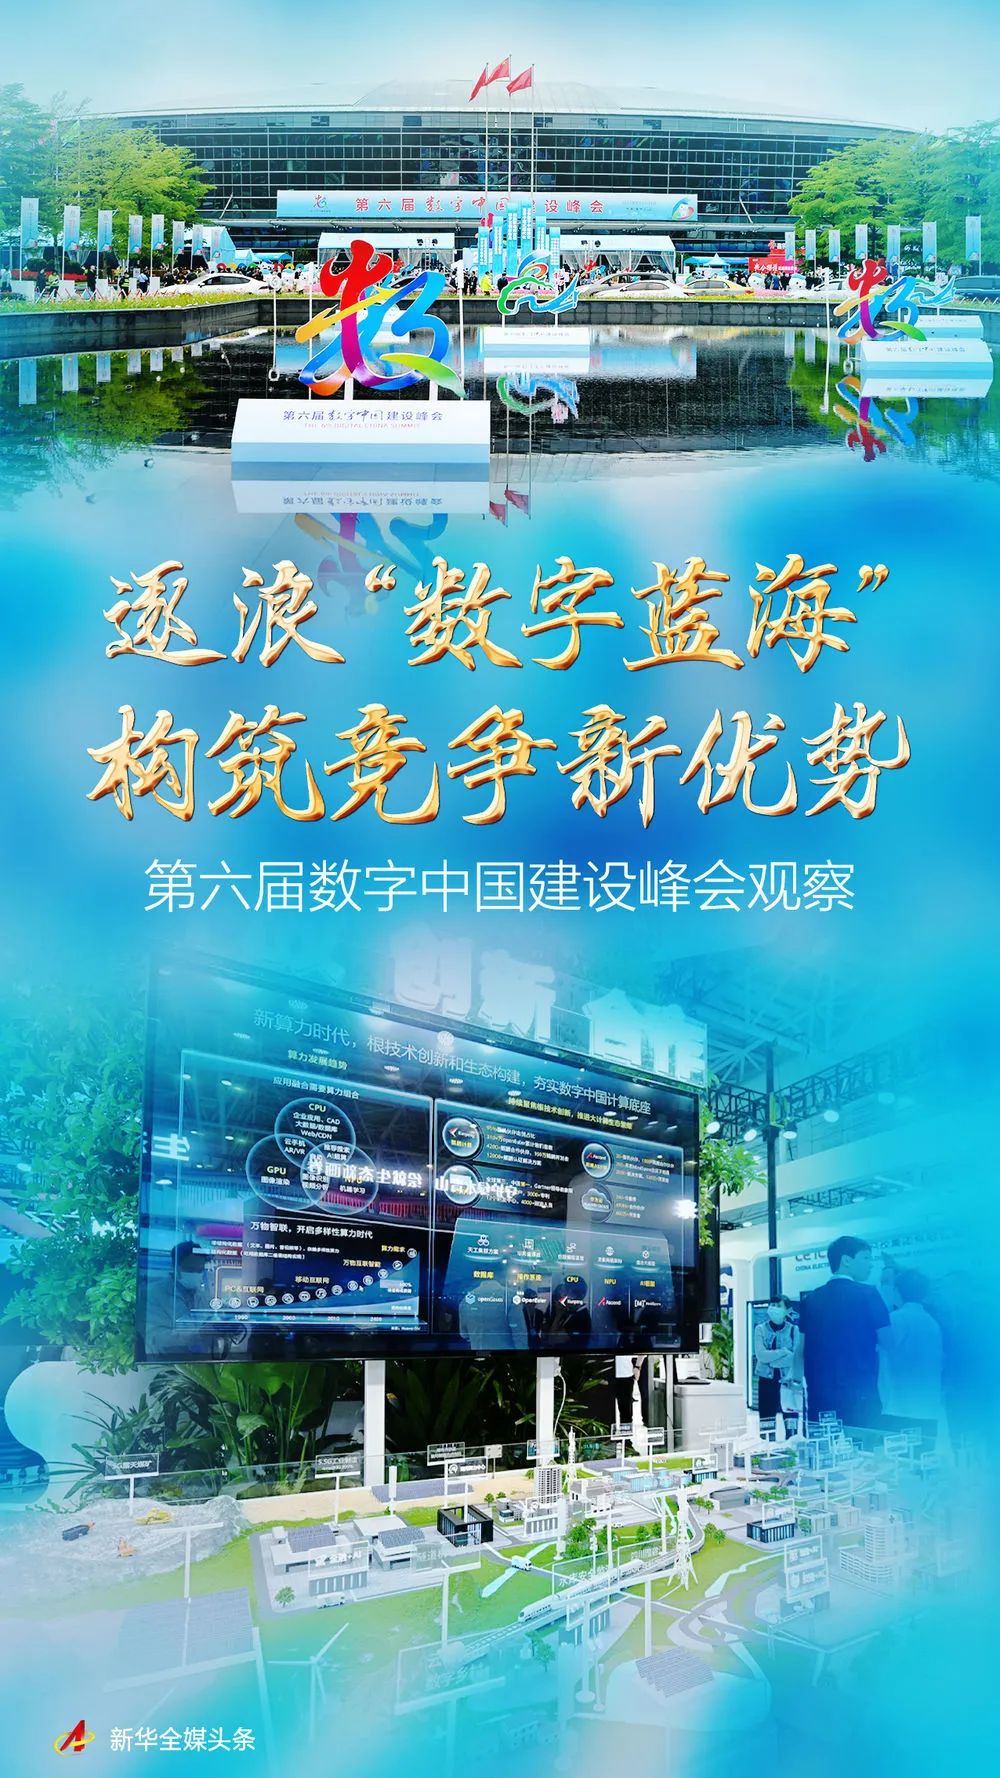 逐浪“数字蓝海” 构筑竞争新优势——第六届数字中国建设峰会观察